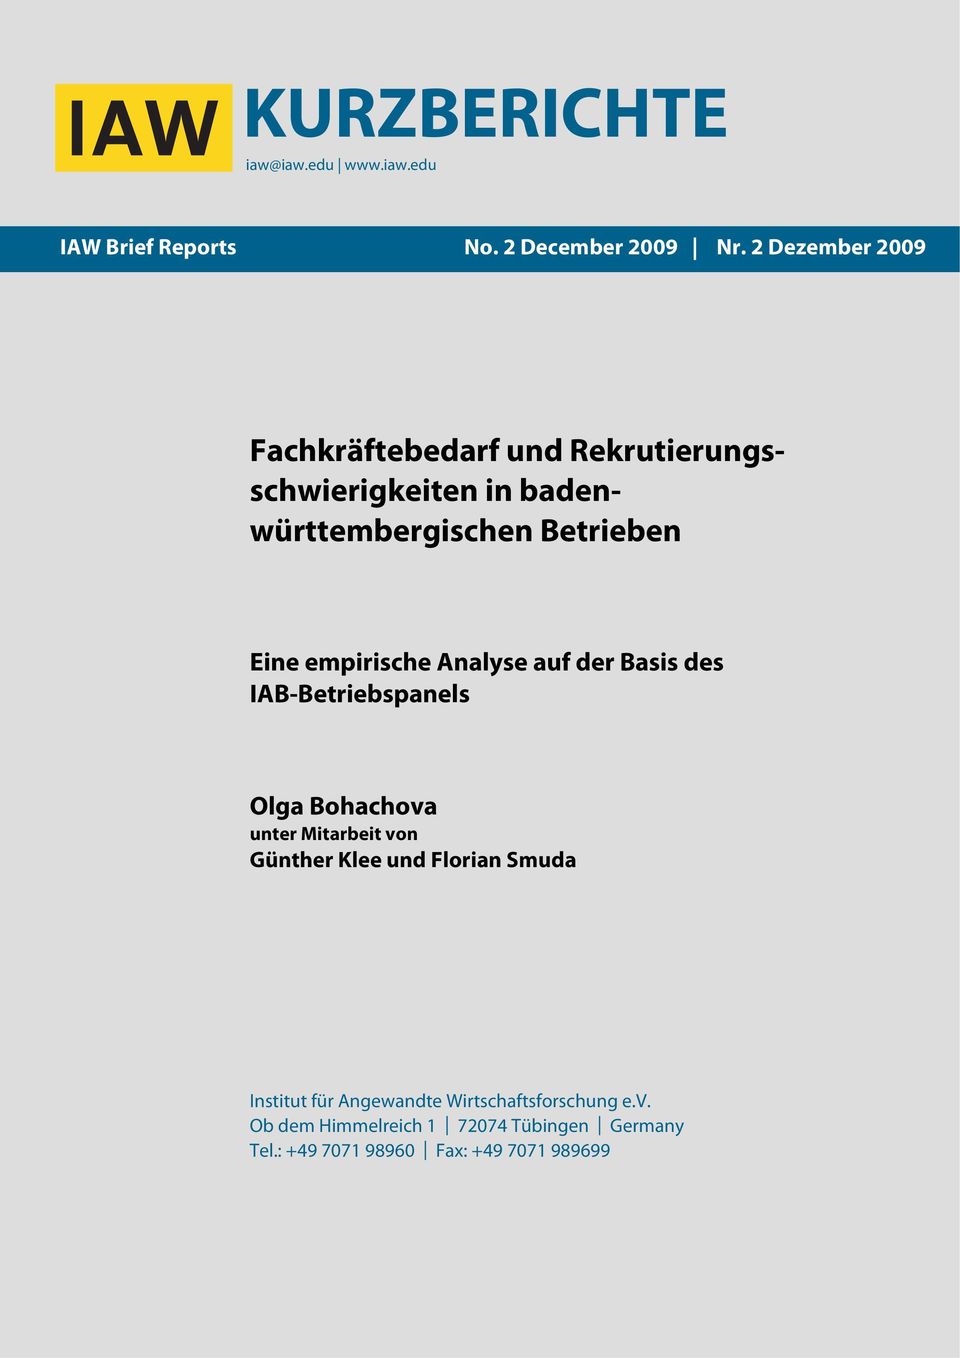 empirische Analyse auf der Basis des IAB-Betriebspanels Olga Bohachova unter Mitarbeit von Günther Klee und